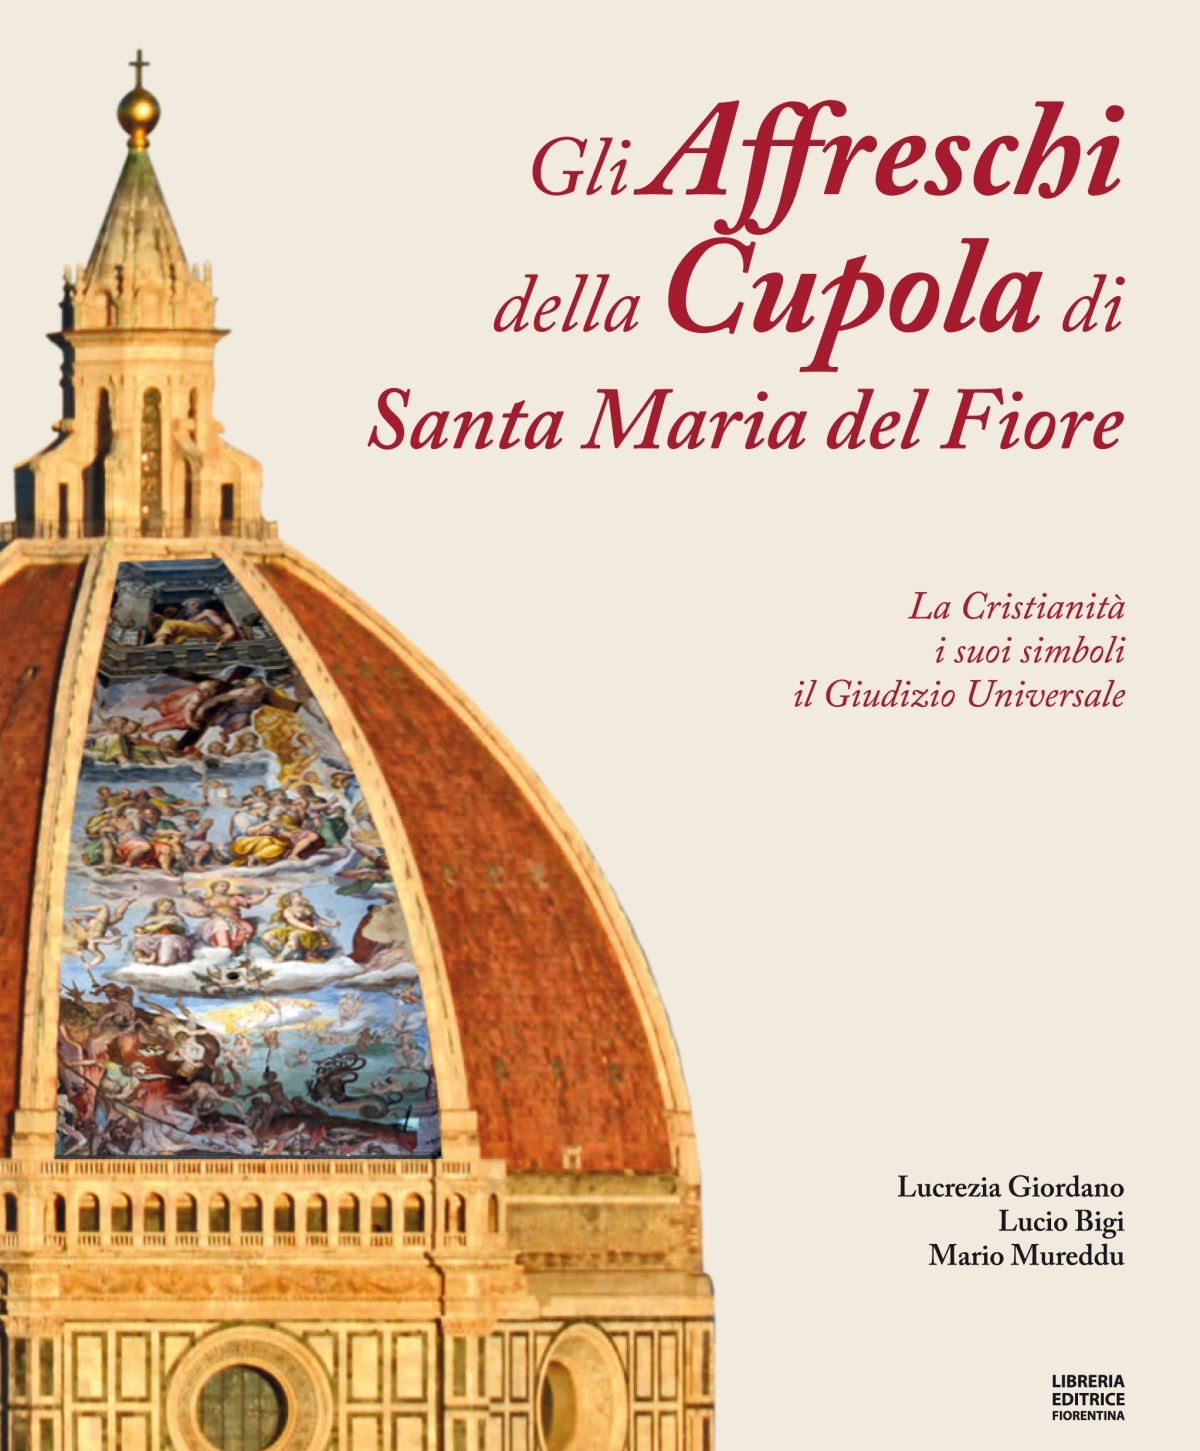 Gli affreschi della cupola di Santa Maria del Fiore